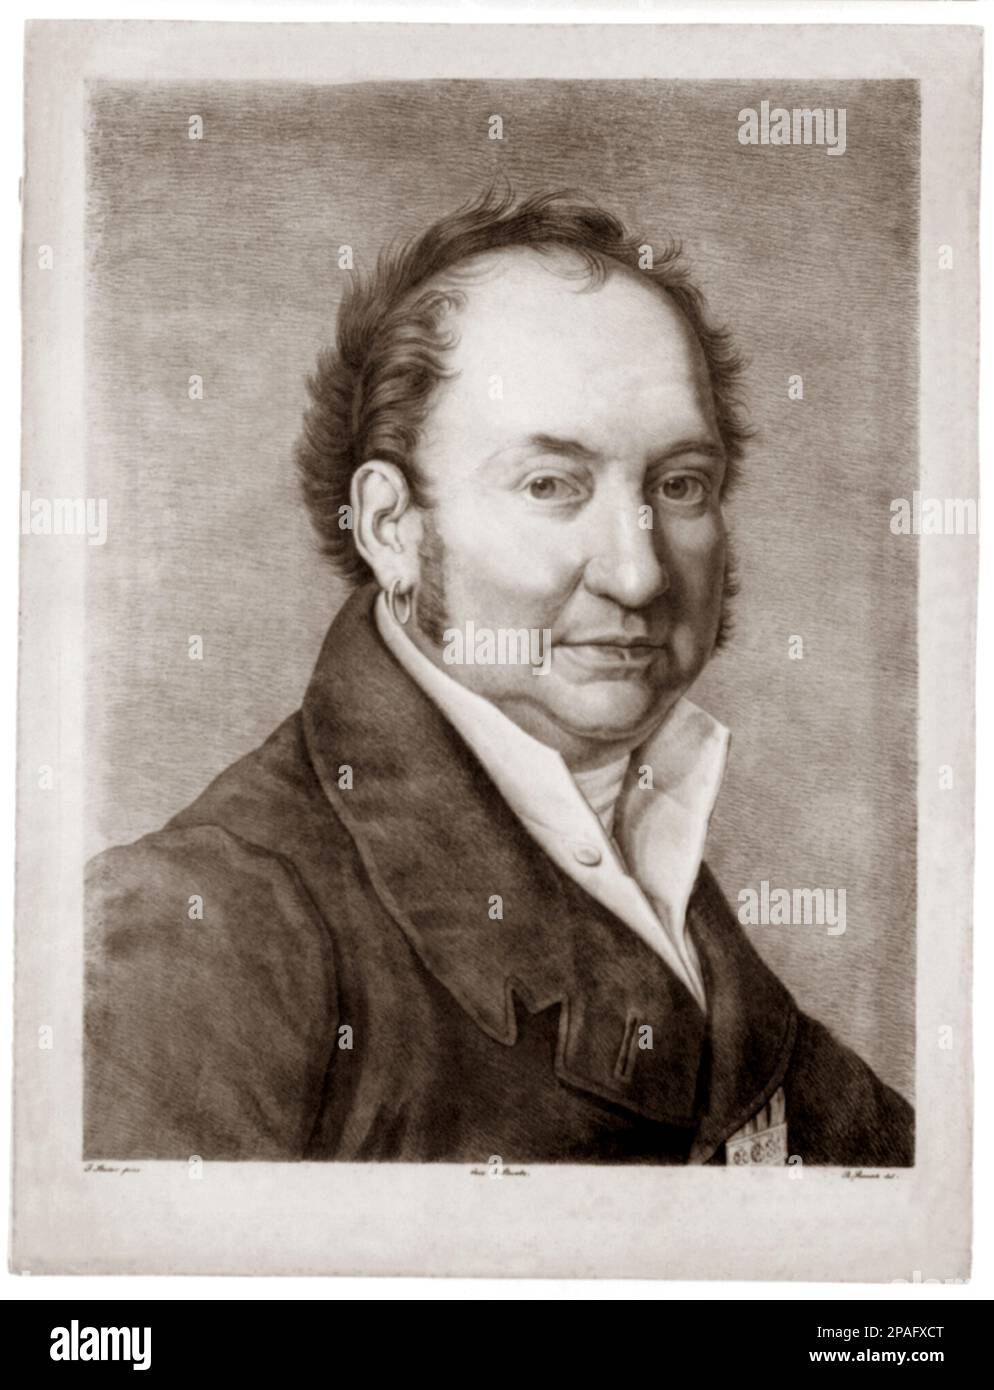 1835 ca , ITALIA : il celebre compositore italiano GIOACCHINO ROSSINI ( 1792 - 1868 ). - COMPOSITORE - OPERA LIRICA - CLASSICA - CLASSICA - RITRATTO - ritratto - musica - MUSICA - MUSICA - colletto - colletto - orecchino - piercing - anello d'oro - anello d'oro - orecchini - incisione - incisione - STORIA - FOTO STORICA --- ARCHIVIO GBB Foto Stock